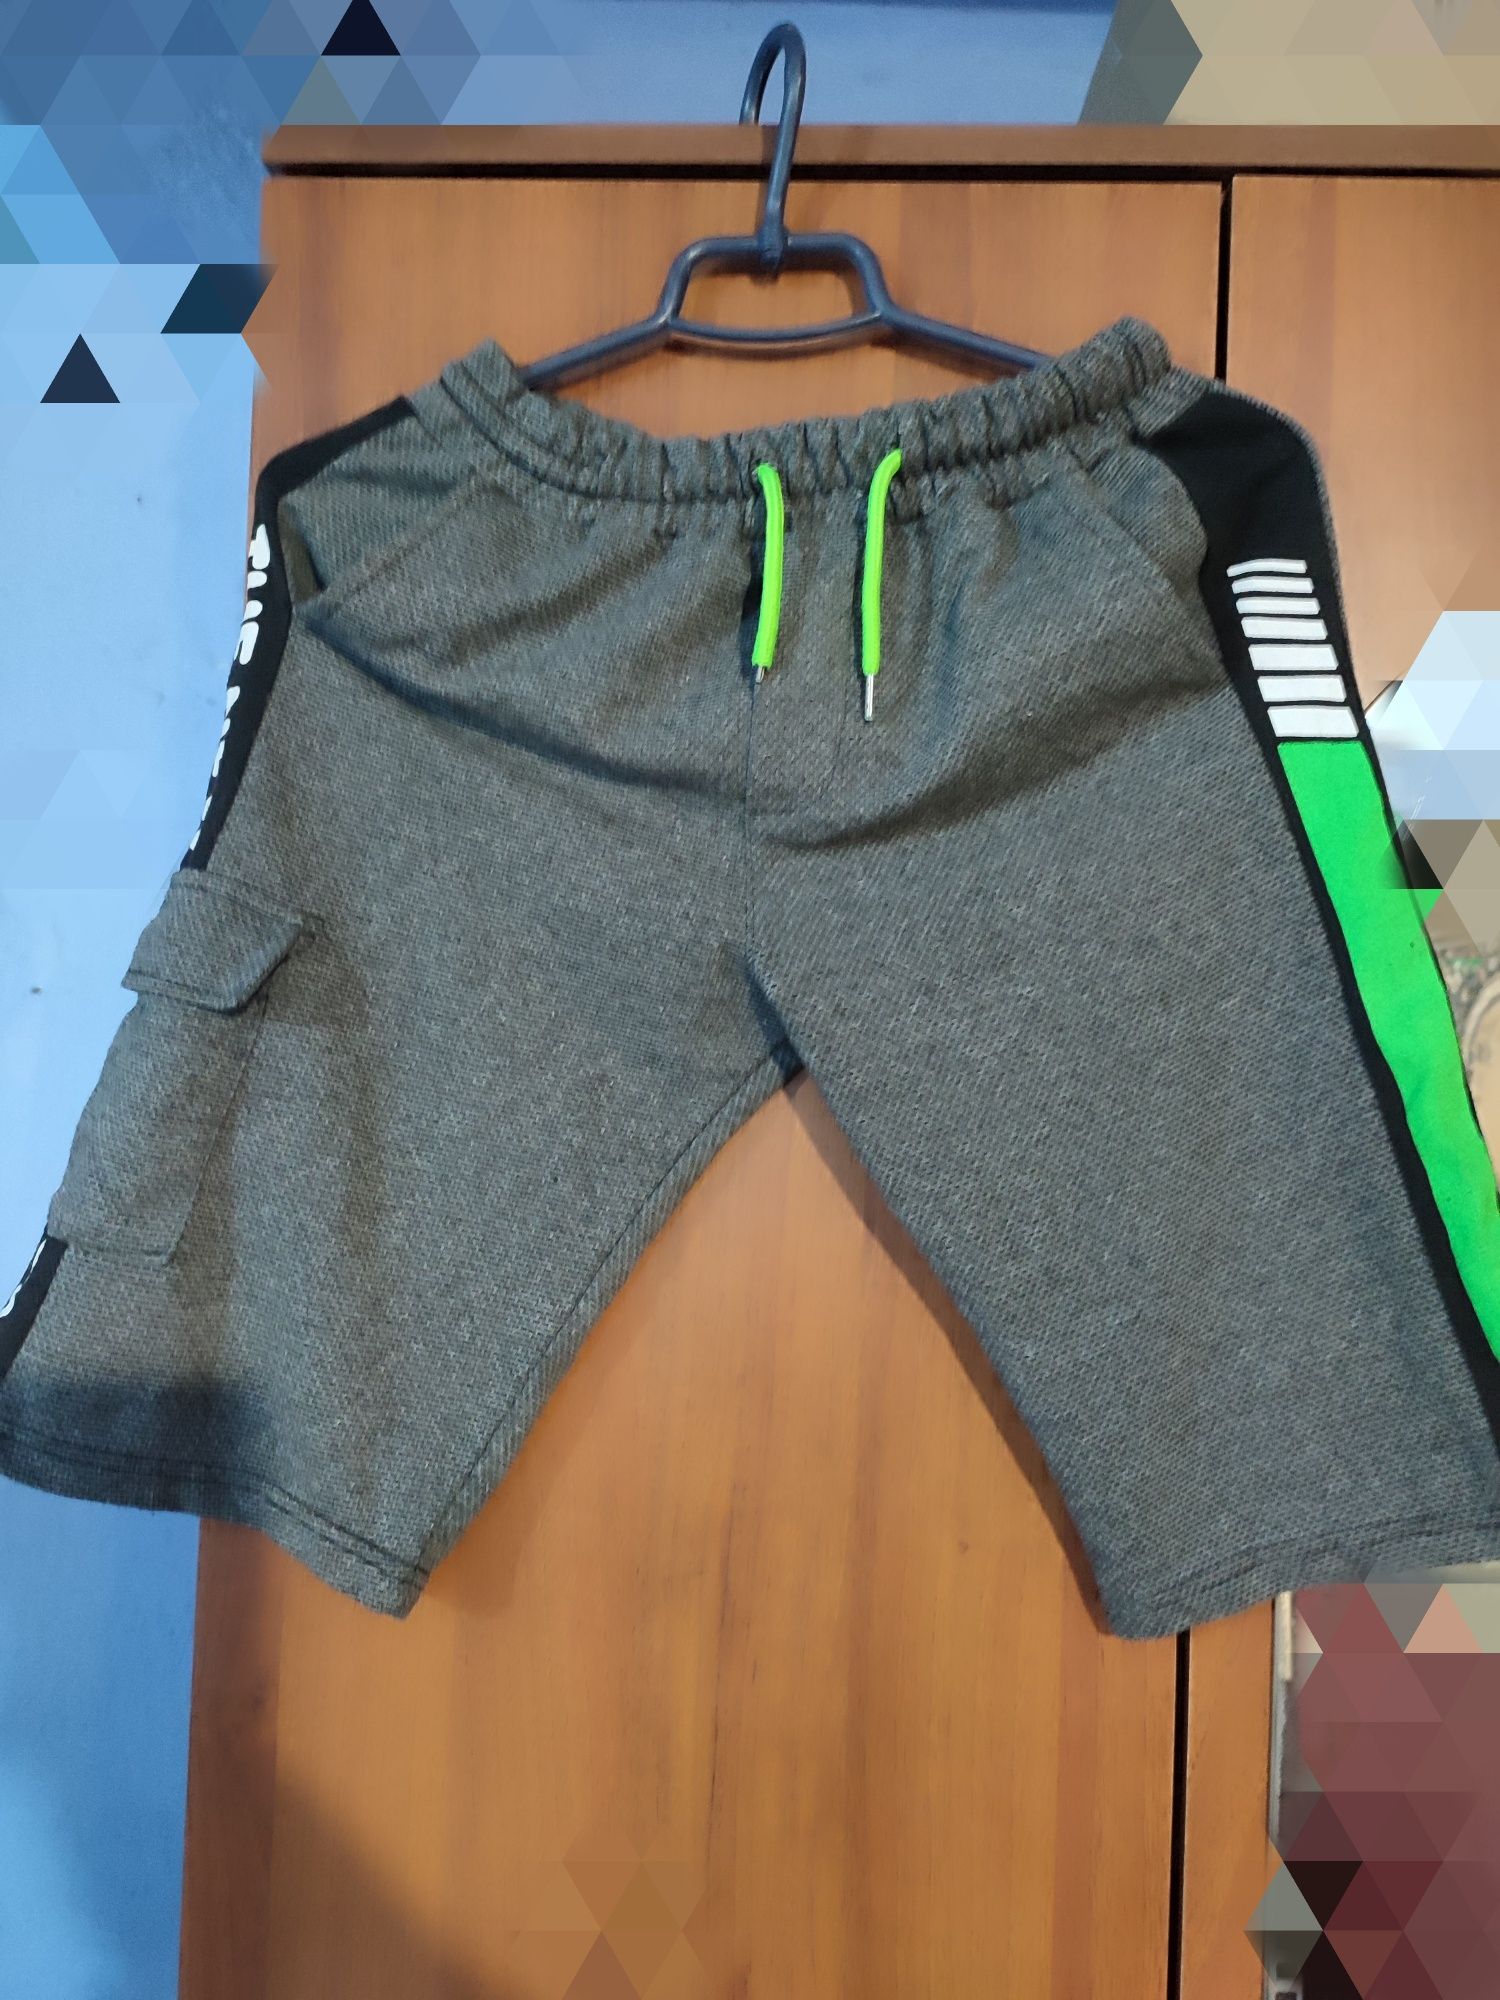 Спортивные штаны для мальчика на 9-12 лет рост 140-152см.